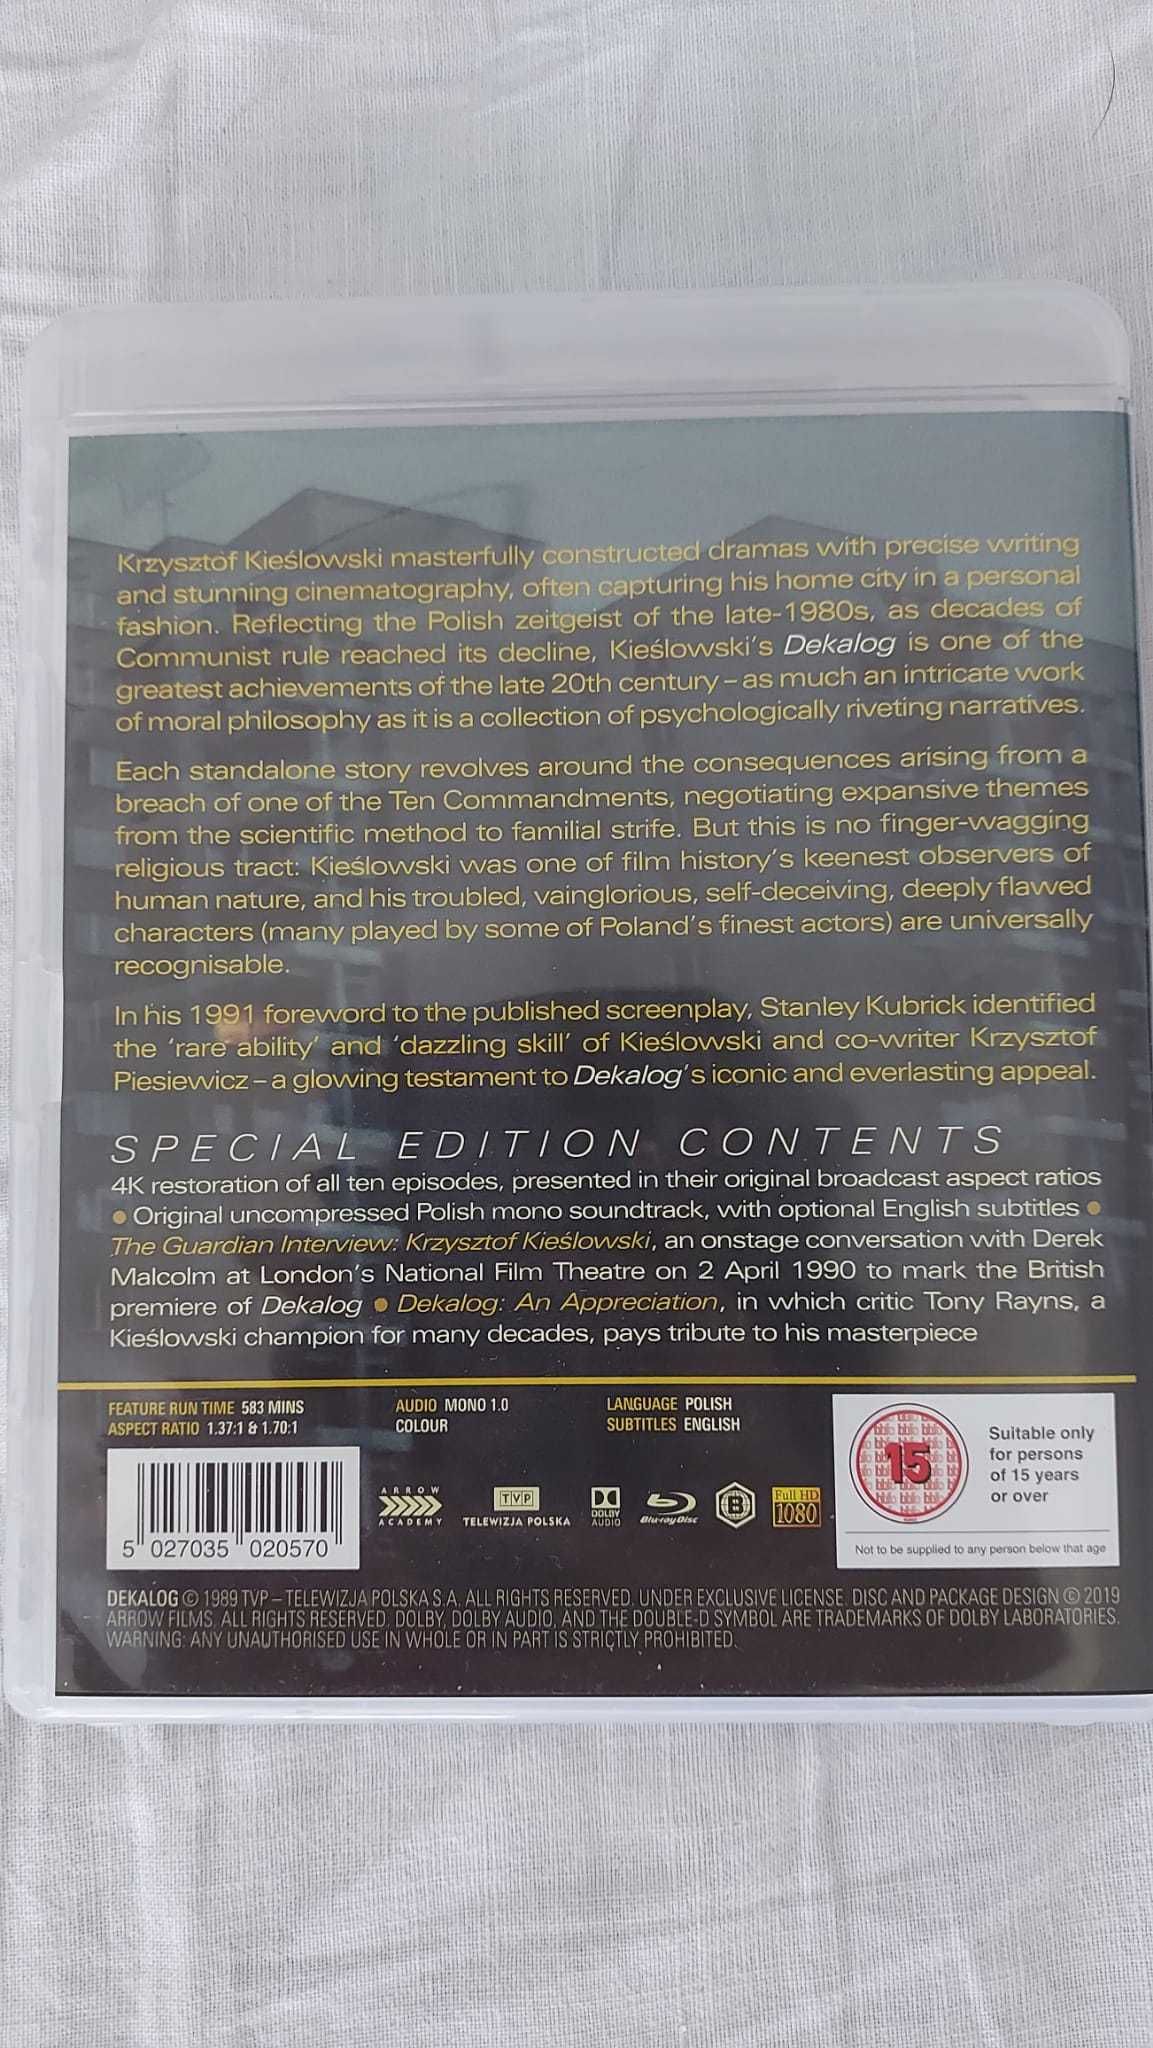 Decalogul - Krzysztof Kieslowski  10 filme de o oră - Blu-ray blu ray